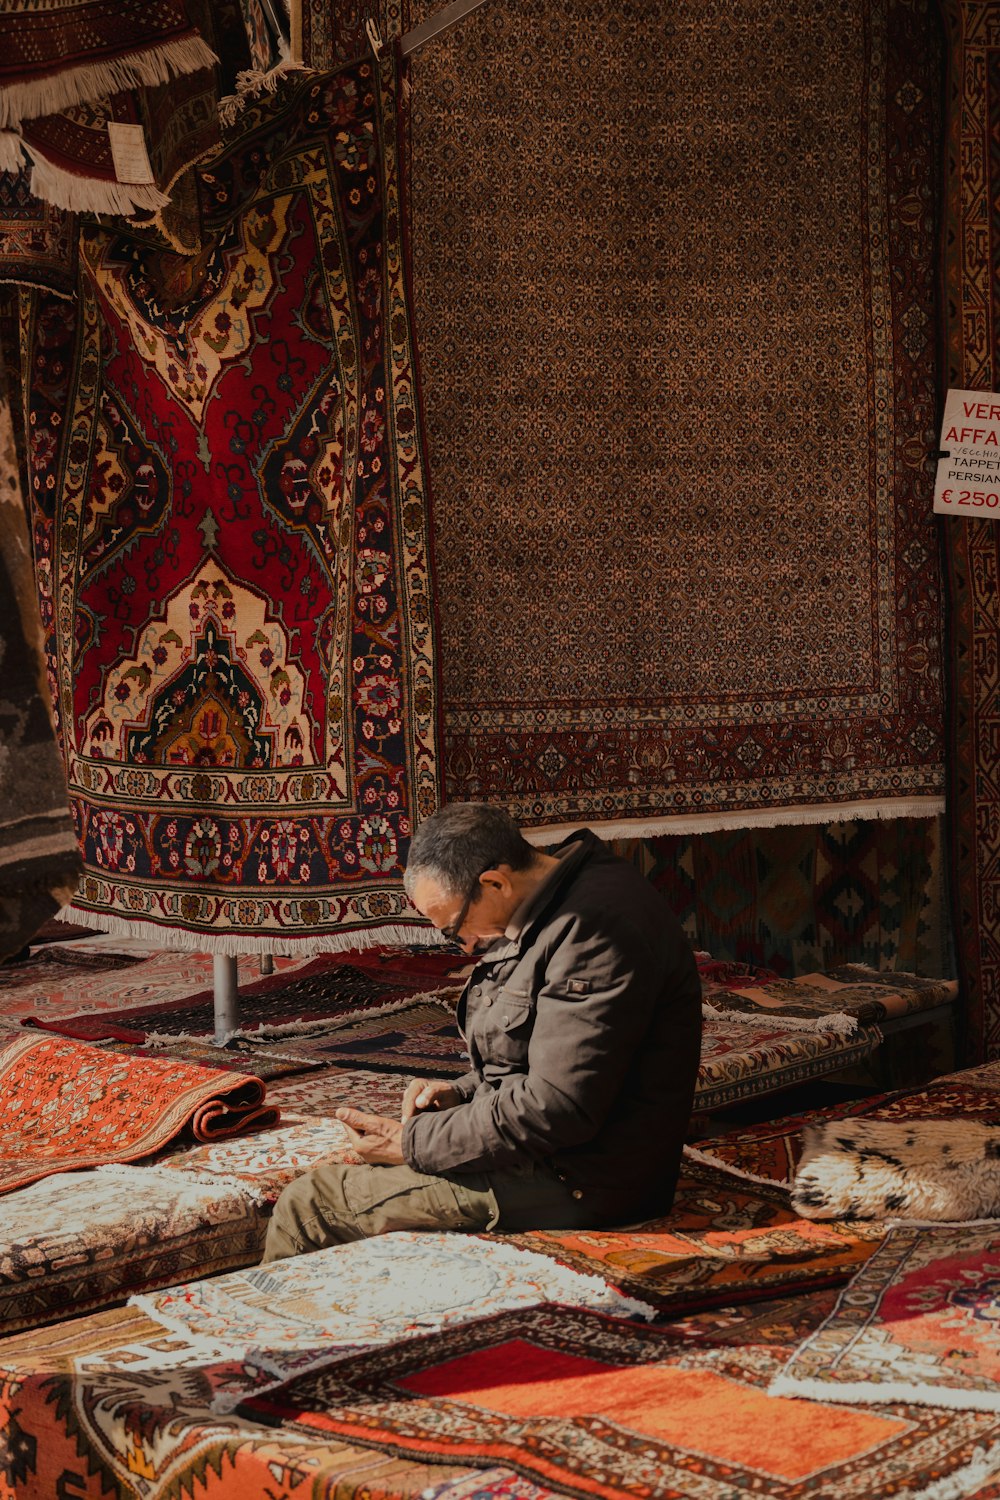 Un uomo seduto a terra accanto a una pila di tappeti